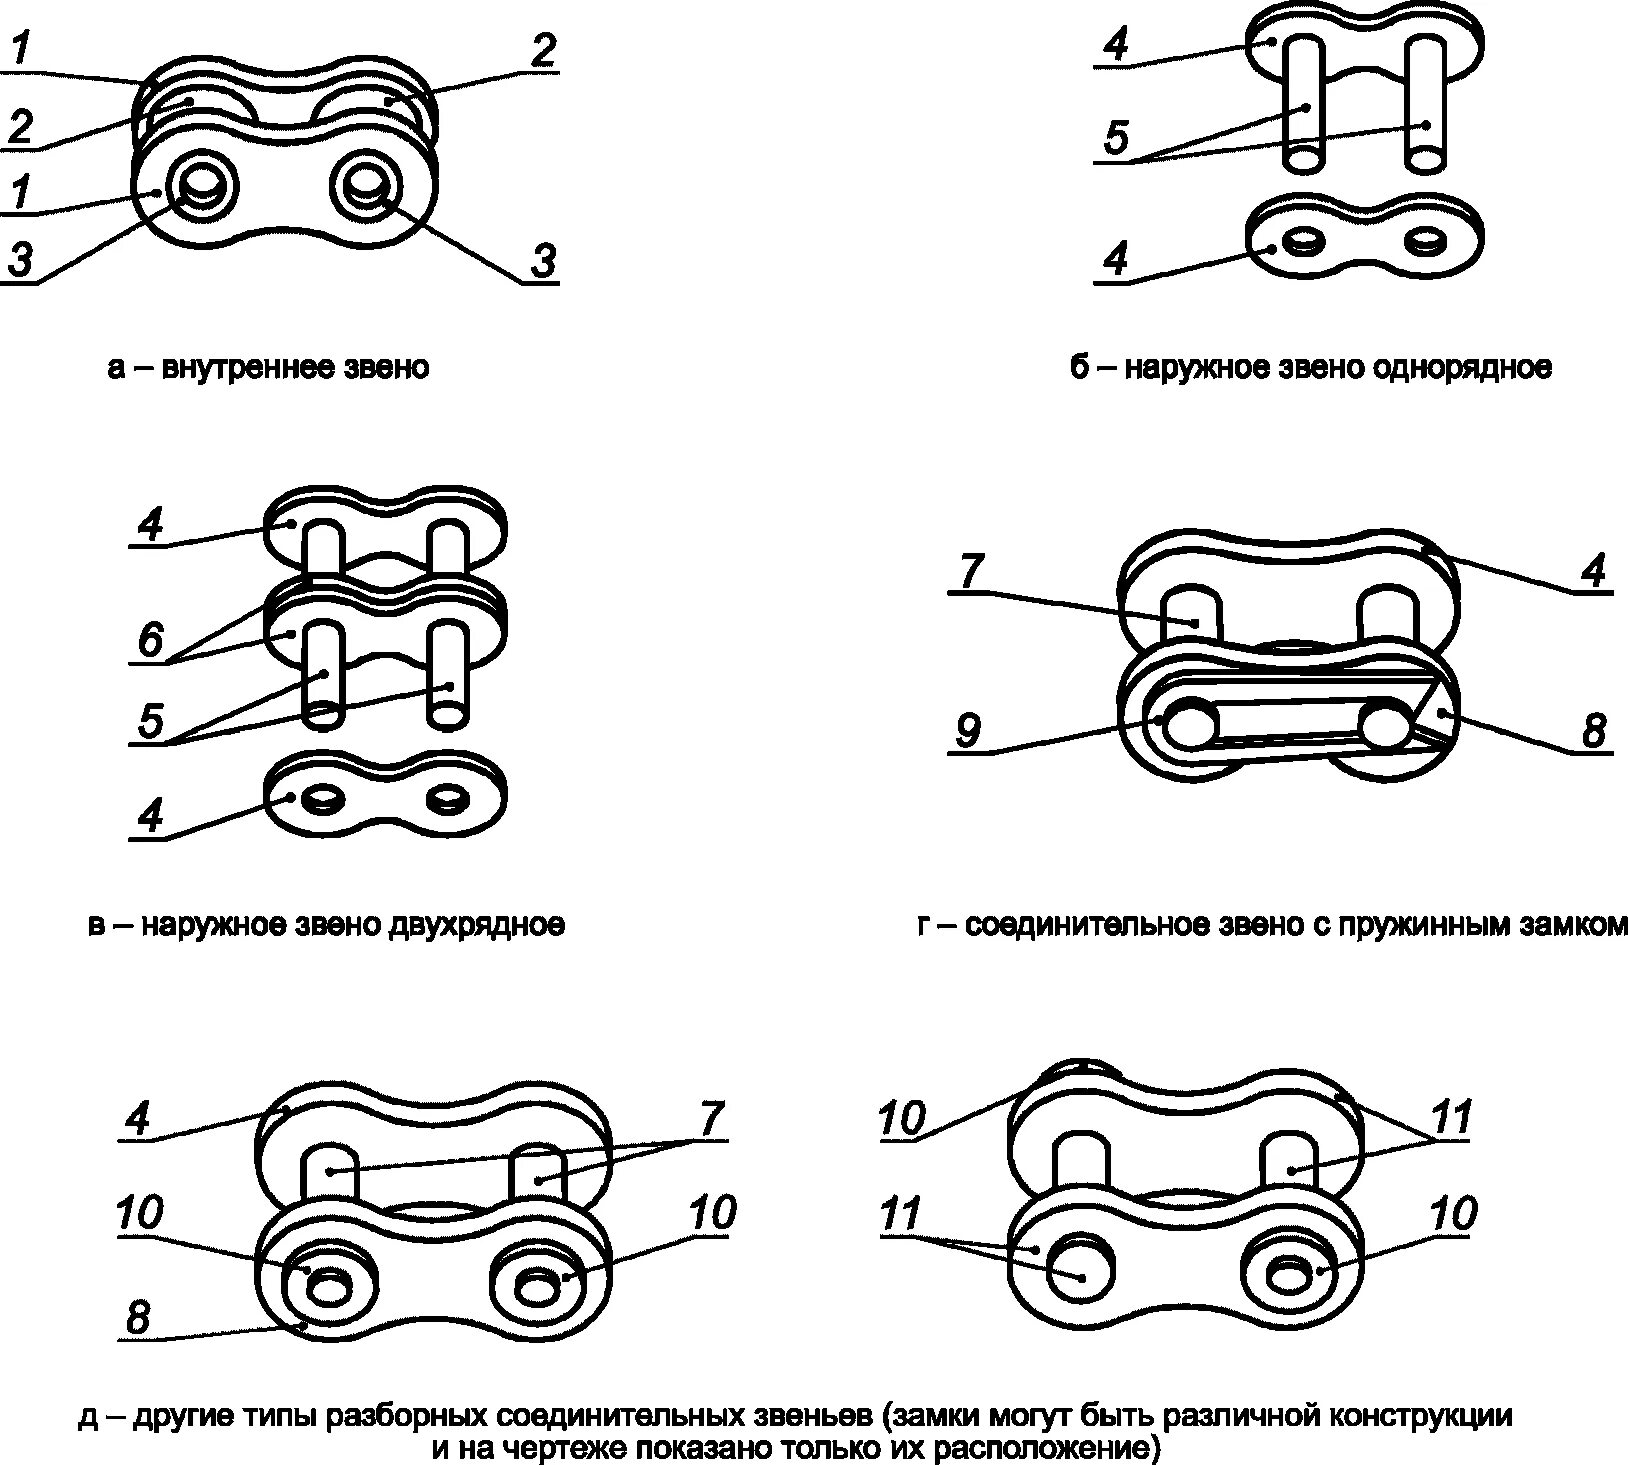 Как определить звено цепи. Соединительное звено роликовой цепи таблица. Цепь 25.4 чертеж звено. Цепи приводные роликовые однорядные велосипедная. Сшиватель приводных втулочно-роликовых цепей чертеж.